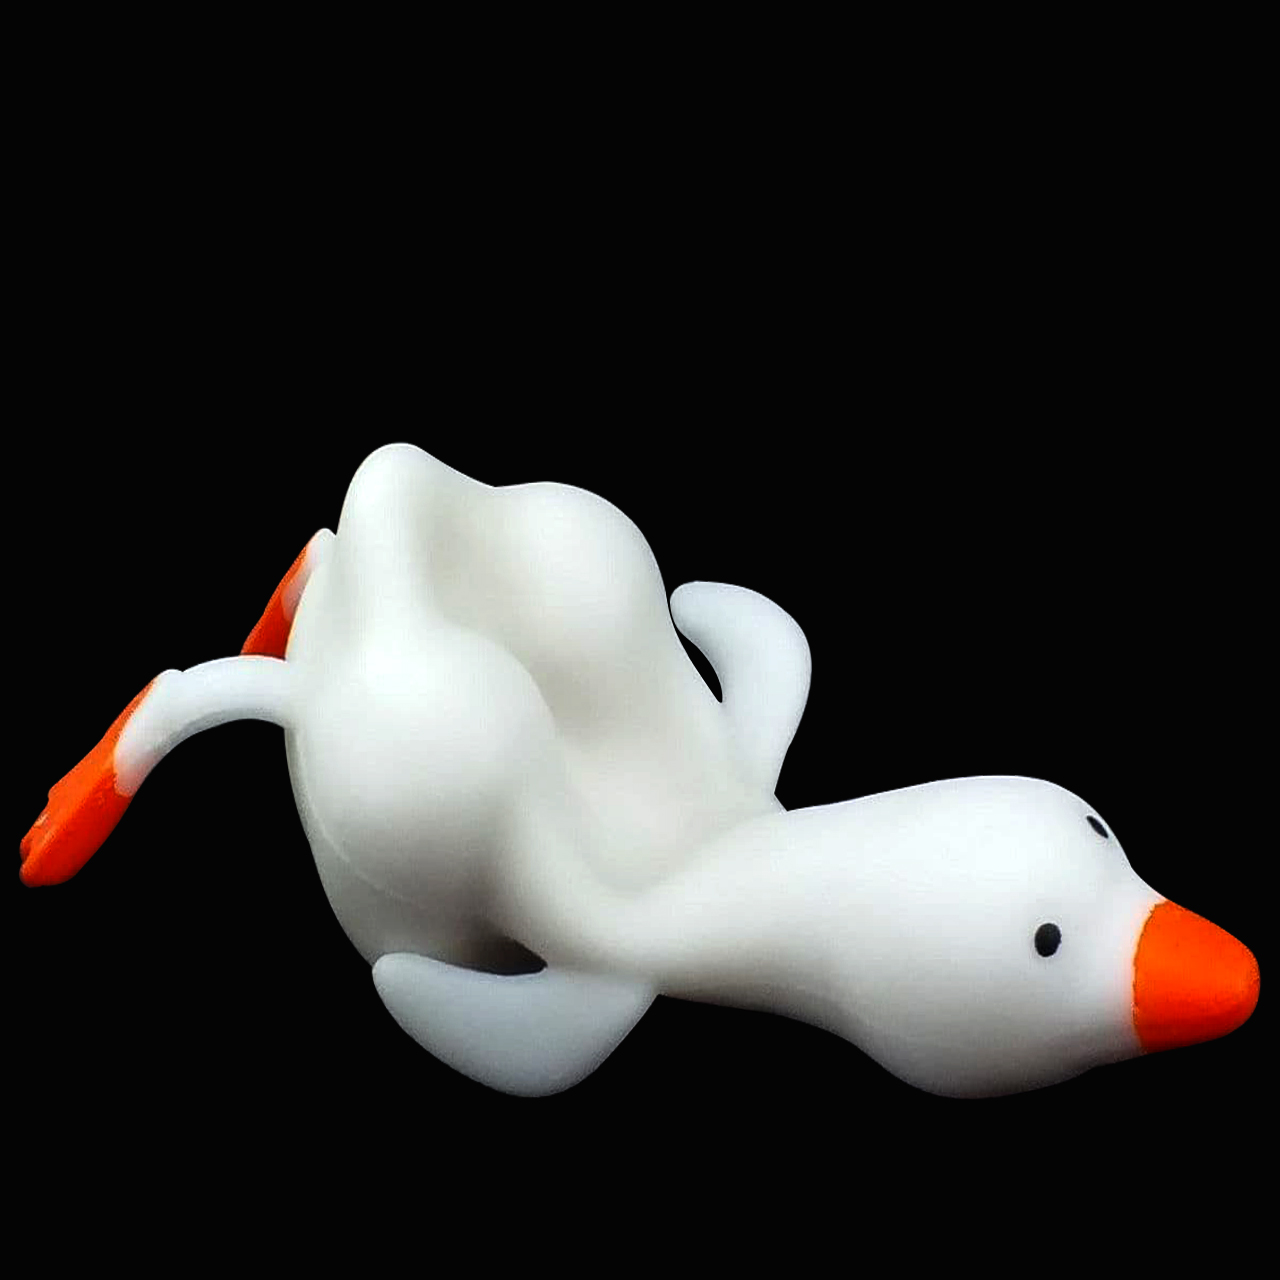 آنباکس فیجت ضد استرس دنیای سرگرمی های کمیاب مدل اردک پروتزی ماسه ای توسط افسانه حیاطی در تاریخ ۱۸ اسفند ۱۴۰۱